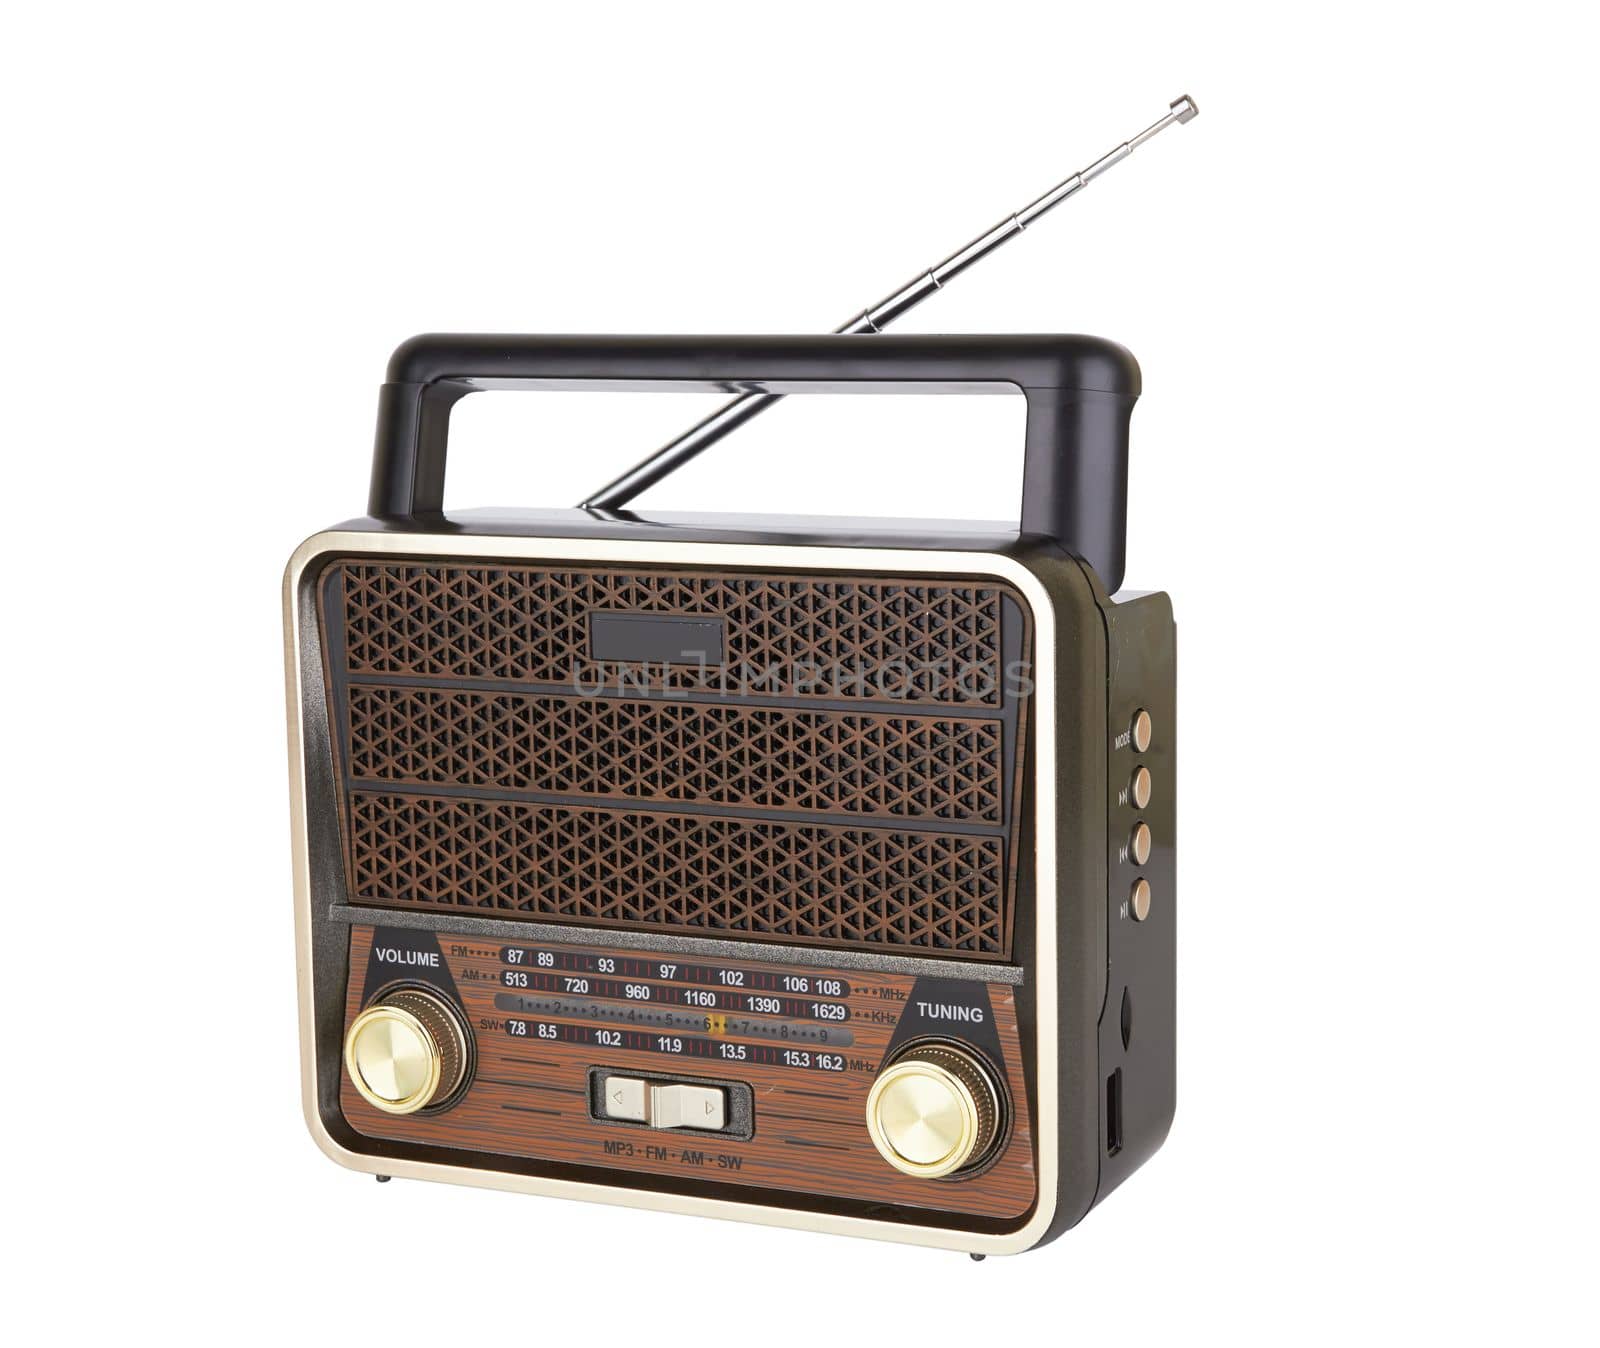 Radio retro portable receiver by pioneer111